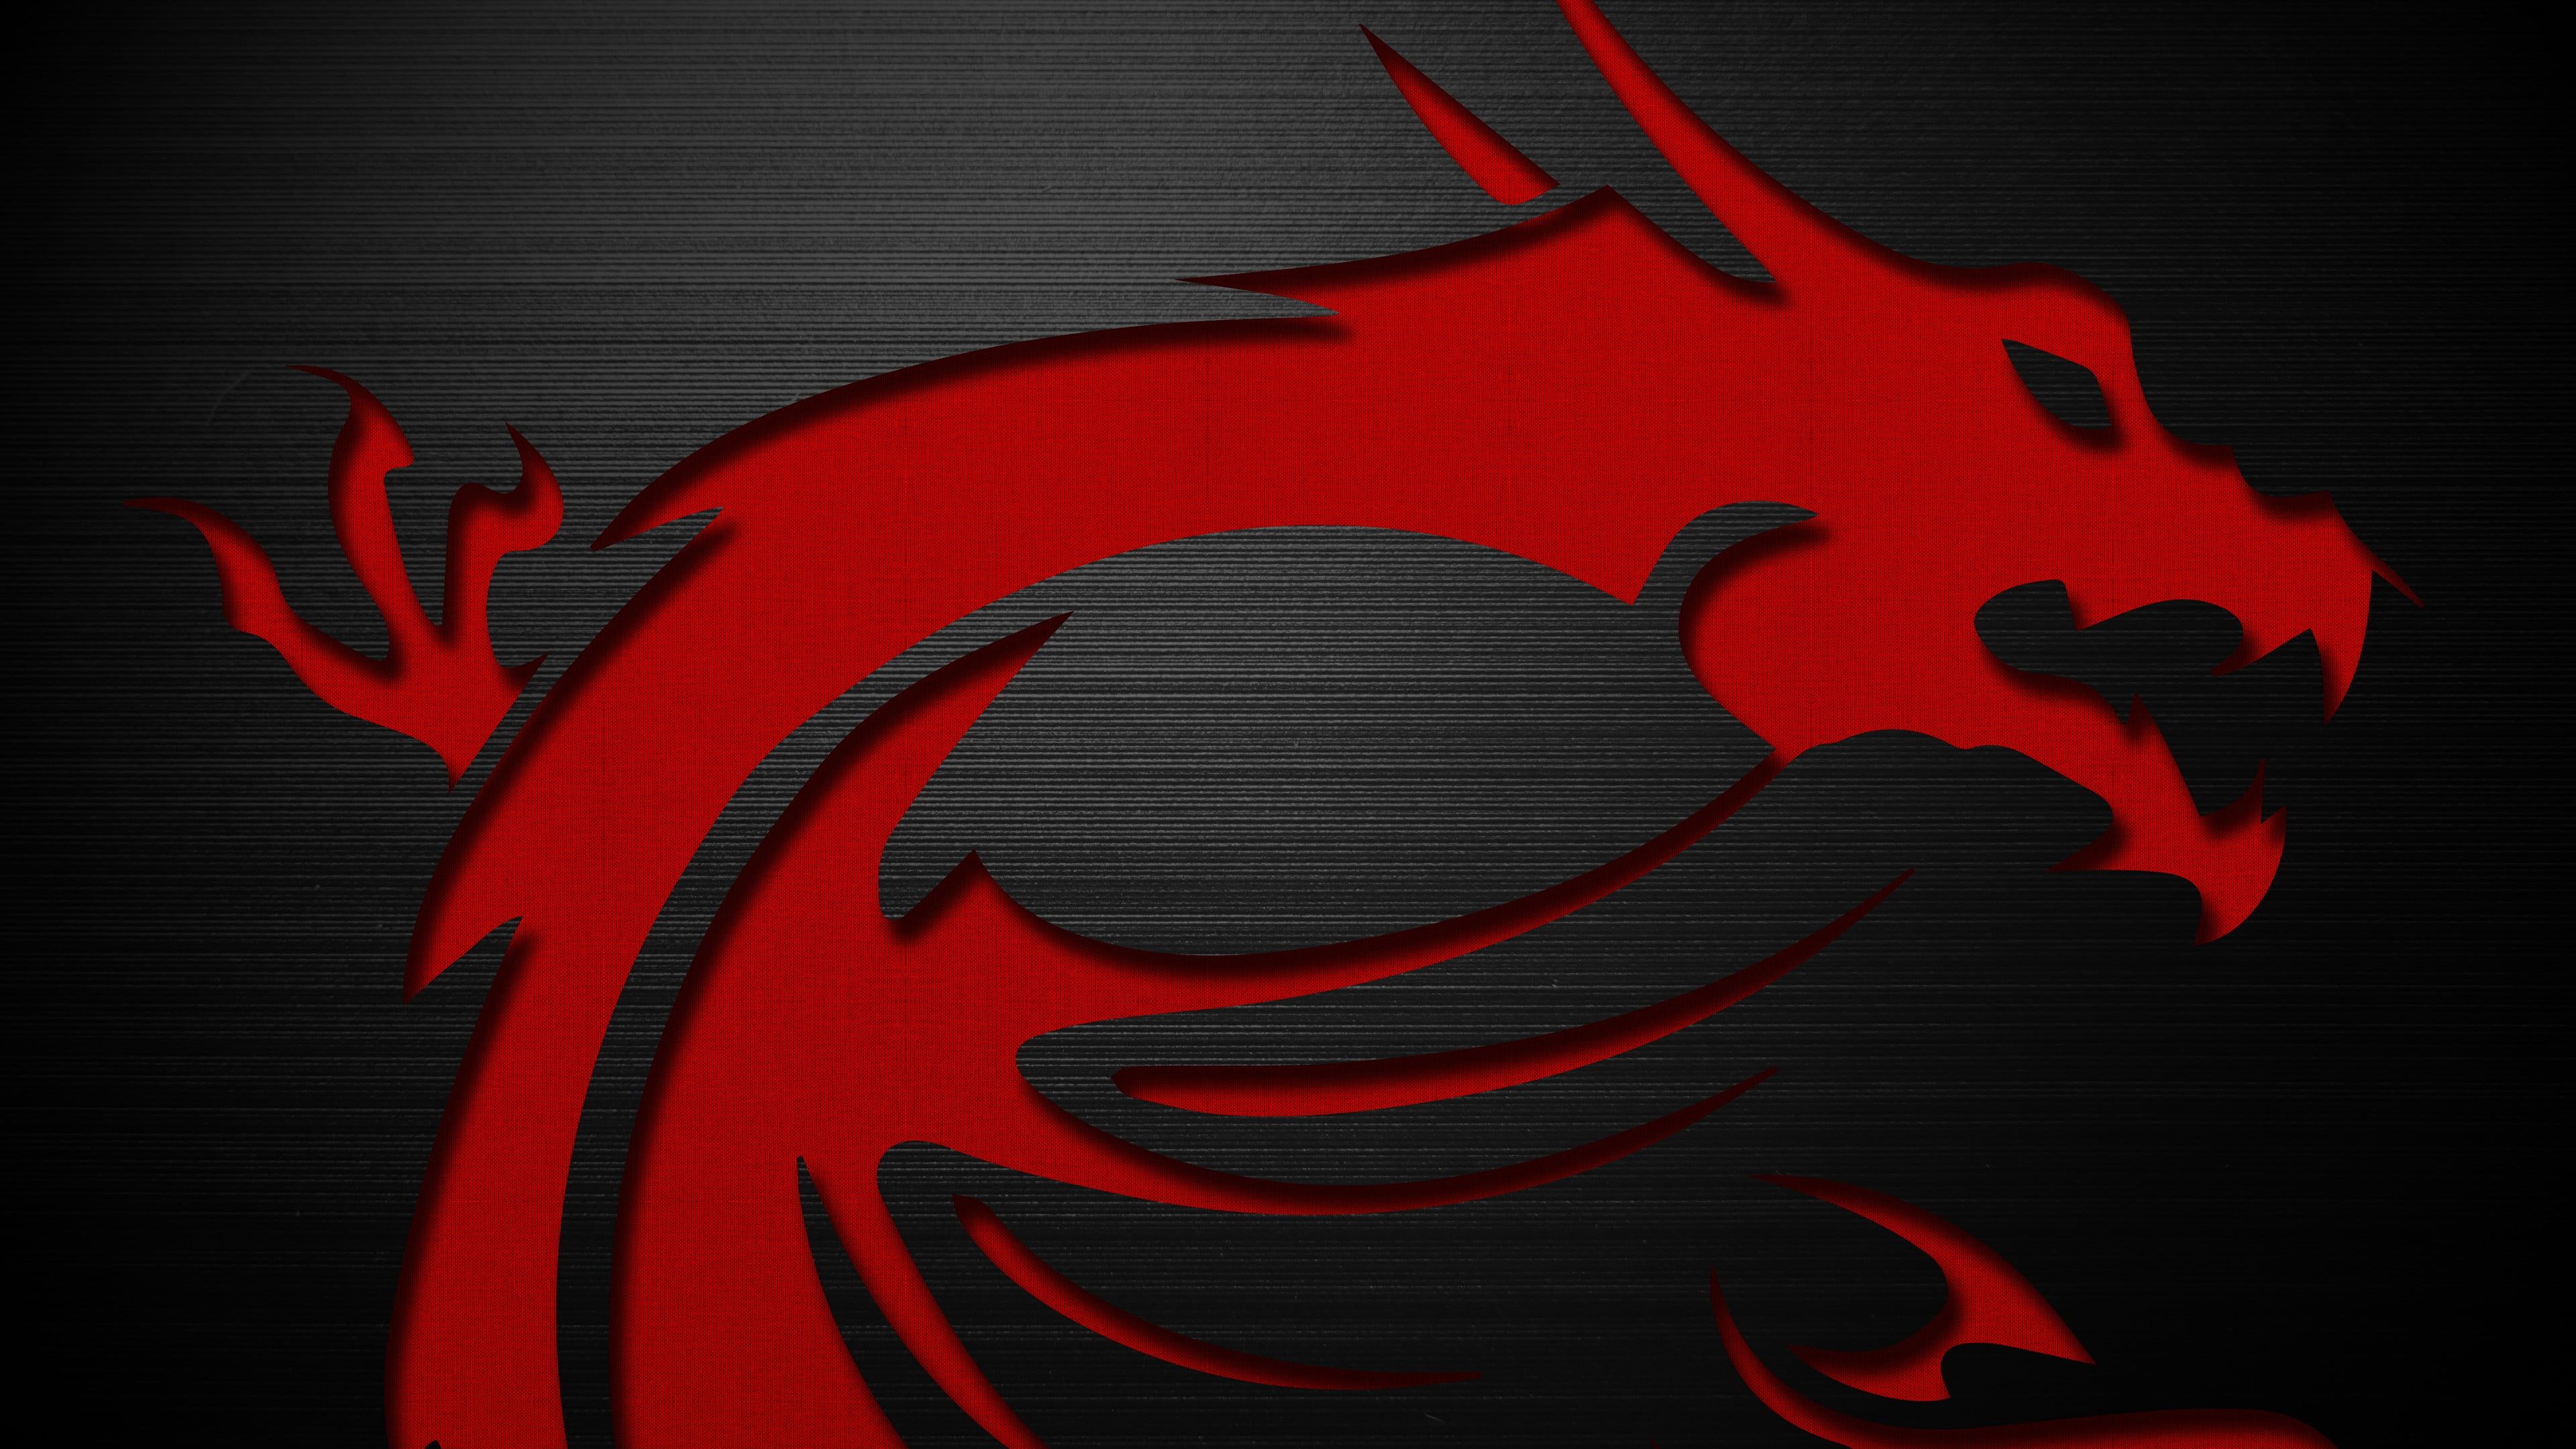 MSI logo #MSI #dragon #logo PC gaming #technology #hardware #texture K # wallpaper #hdwallpaper #desktop. Wallpaper, Msi logo, Widescreen wallpaper